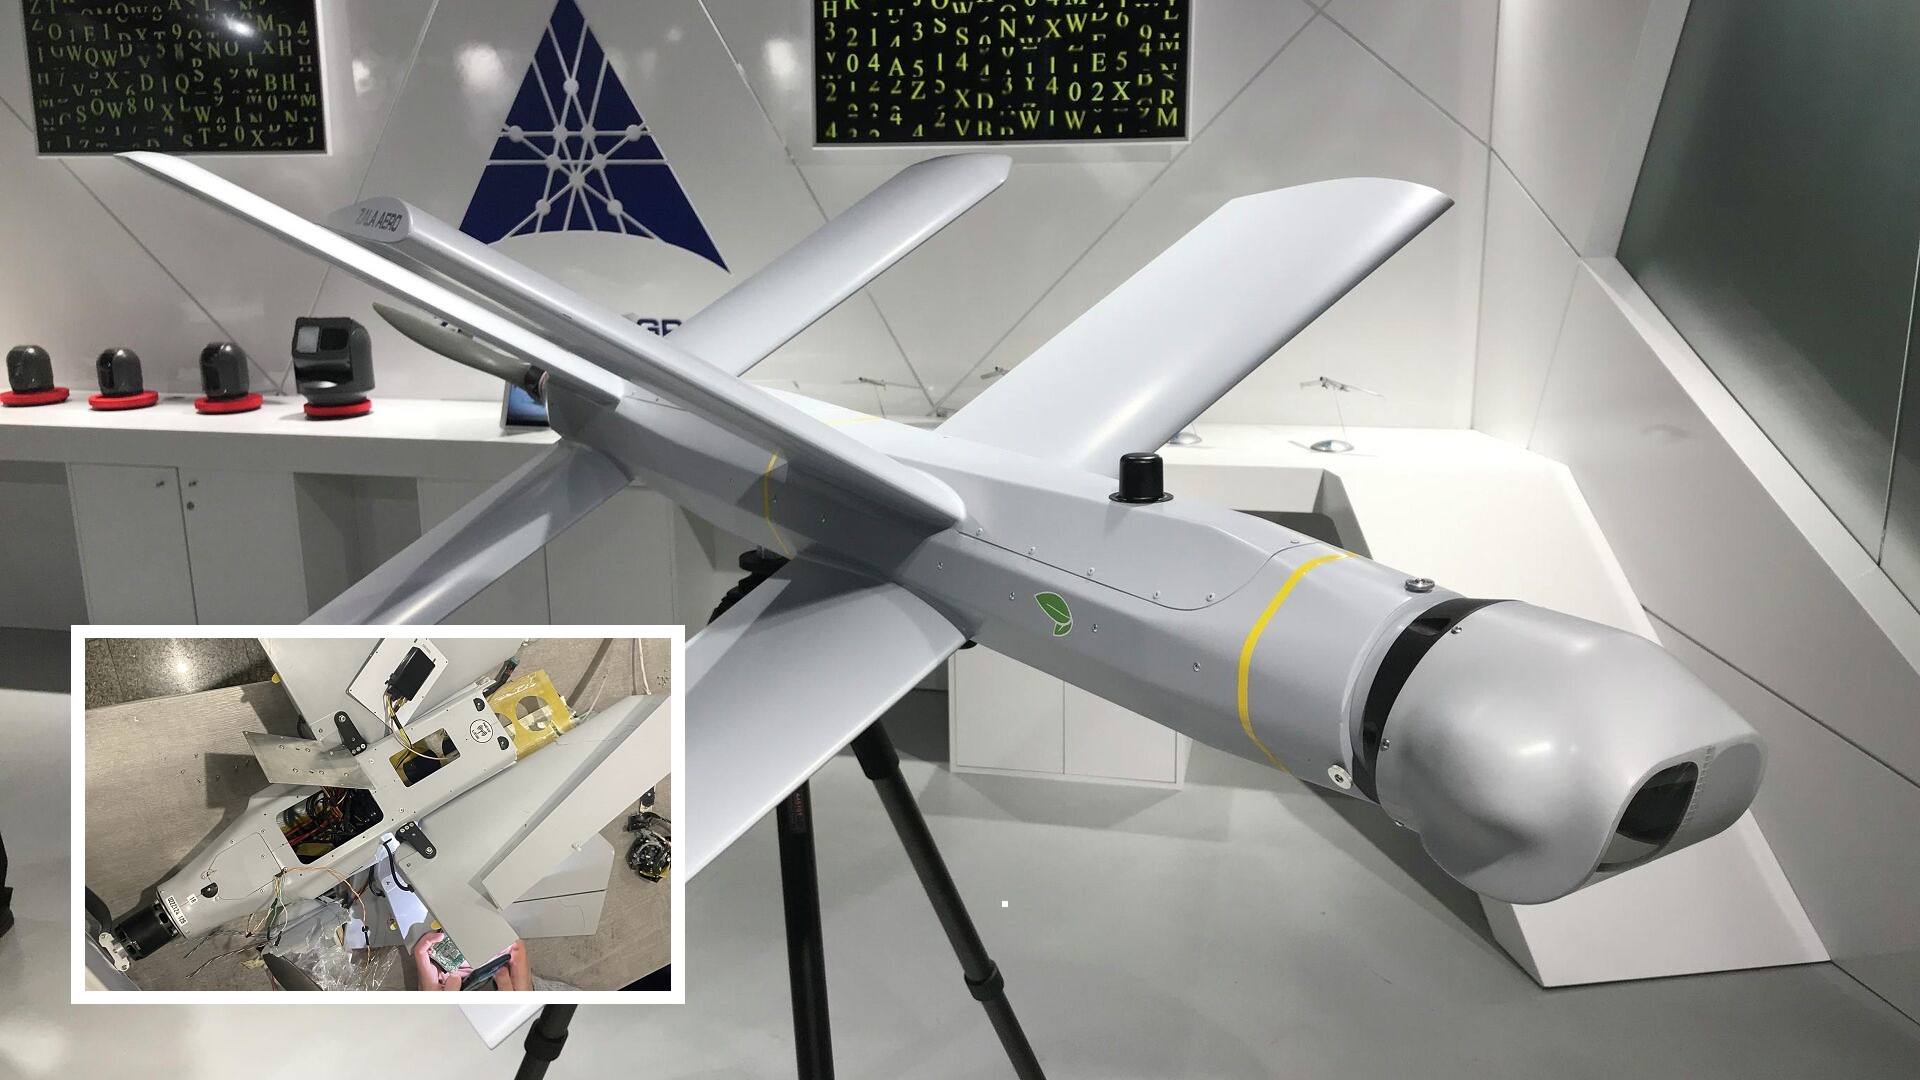 Rosyjski dron kamikaze Lancet jest wyposażony w komputer NVIDIA Jetson TX2 i układ Xilinx Zynq